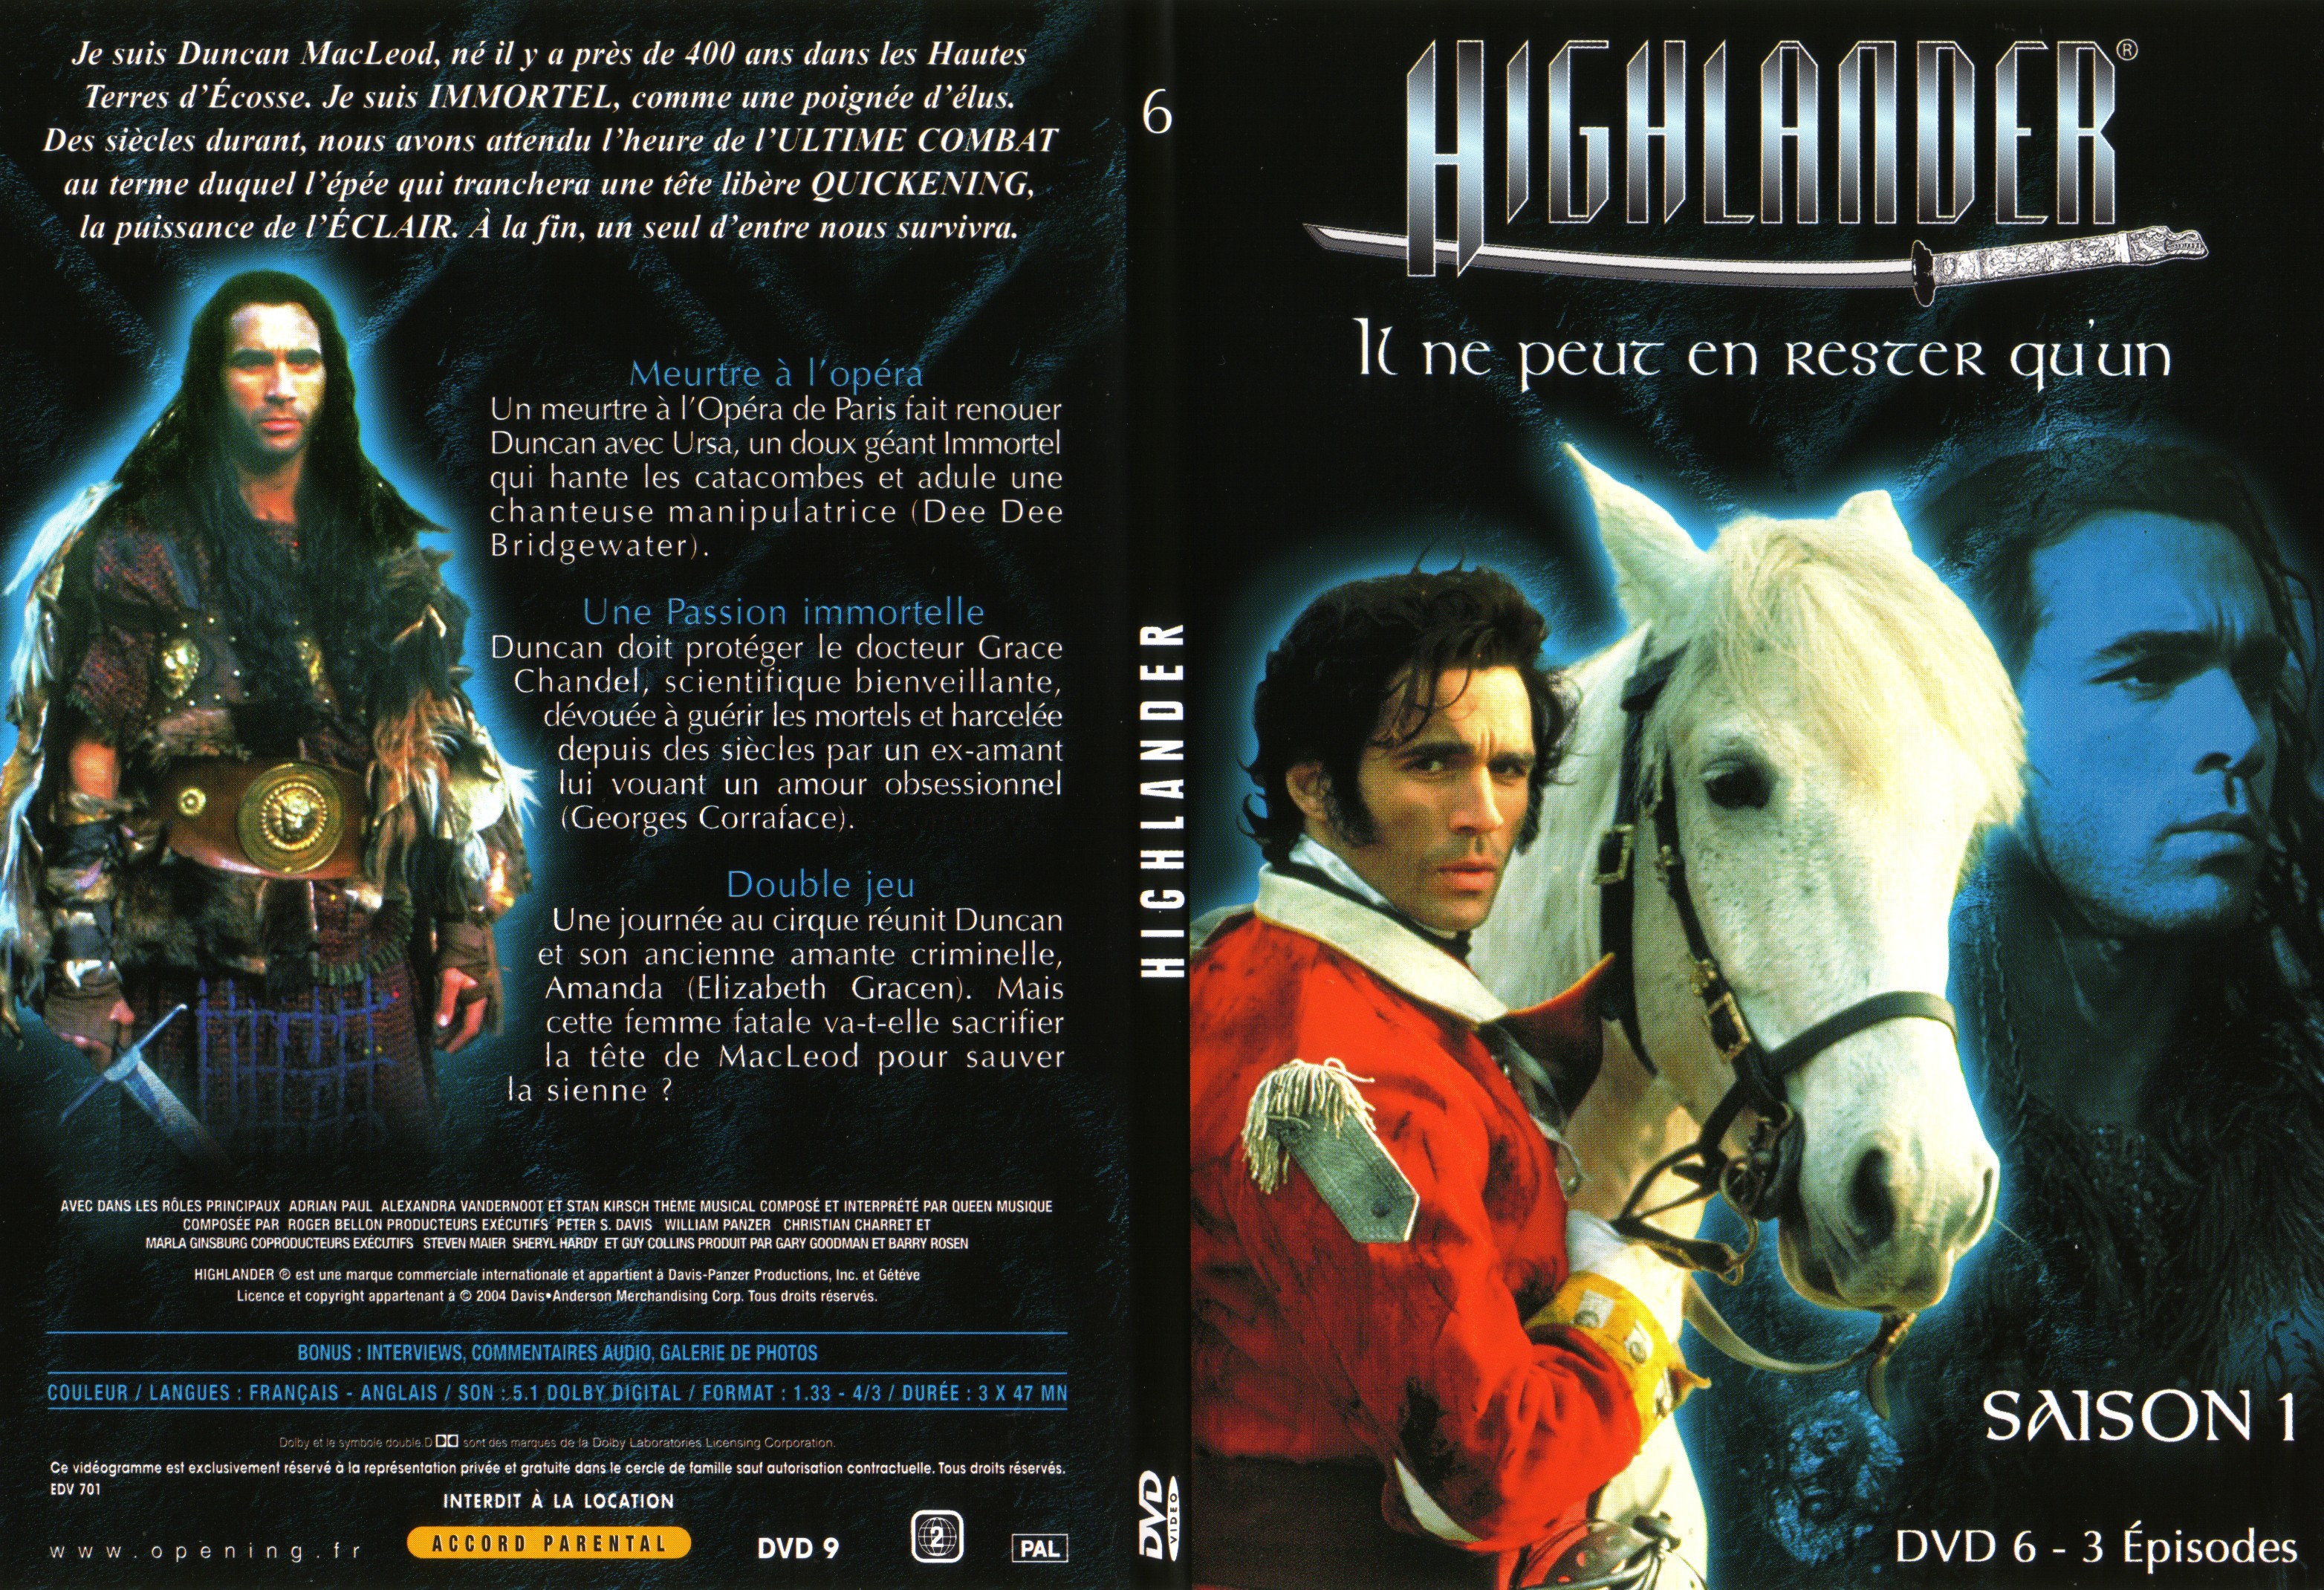 Jaquette DVD Highlander saison 1 DVD 6